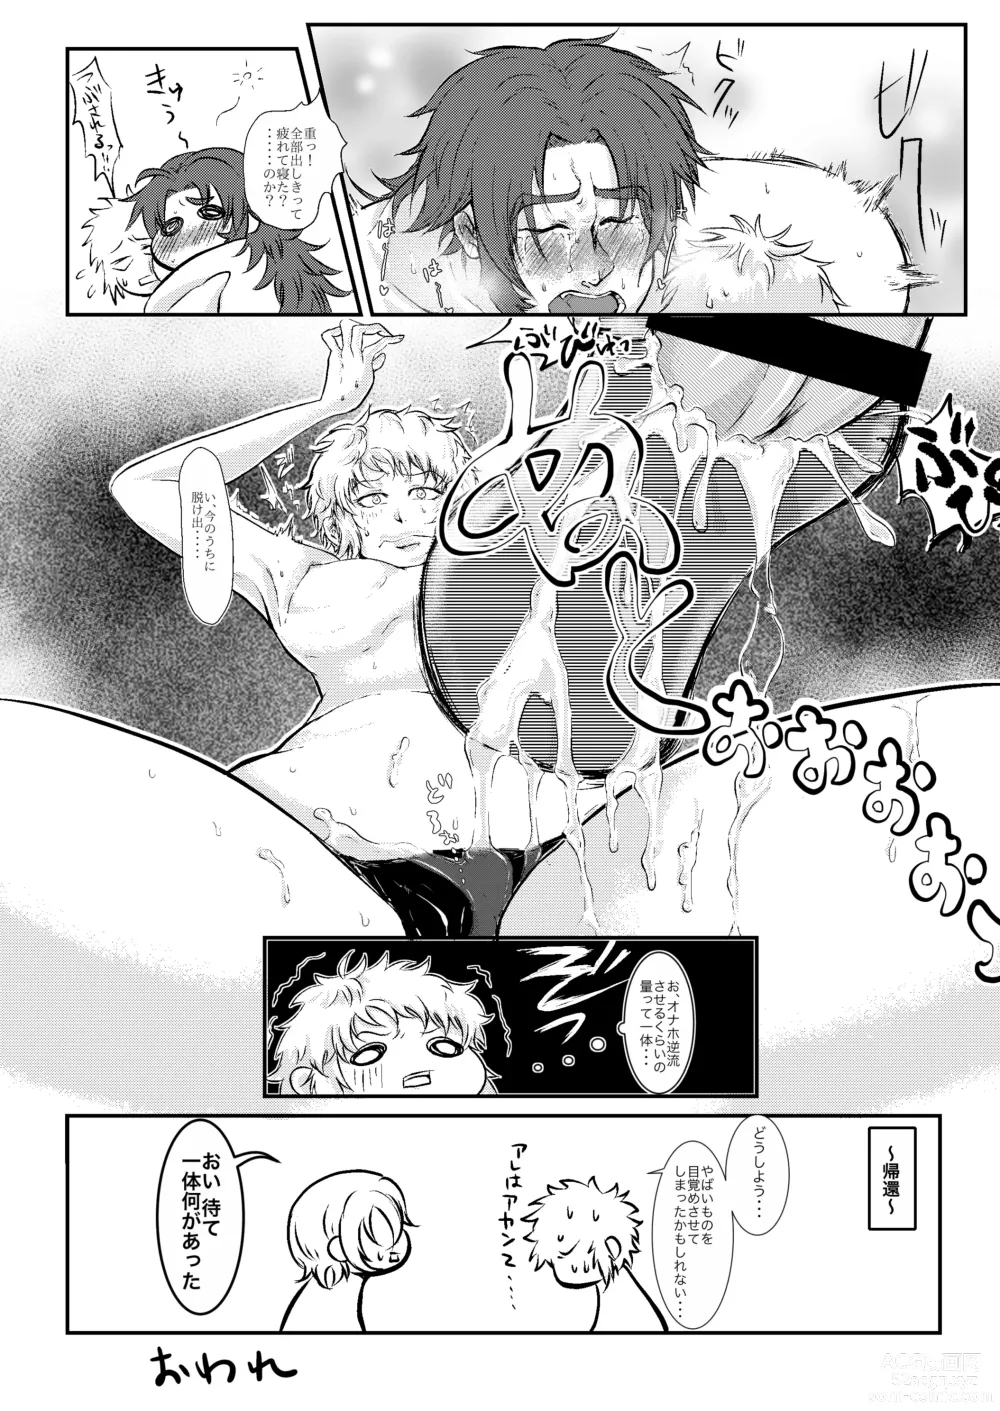 Page 30 of doujinshi Hitori Esu Chino Yari Kata